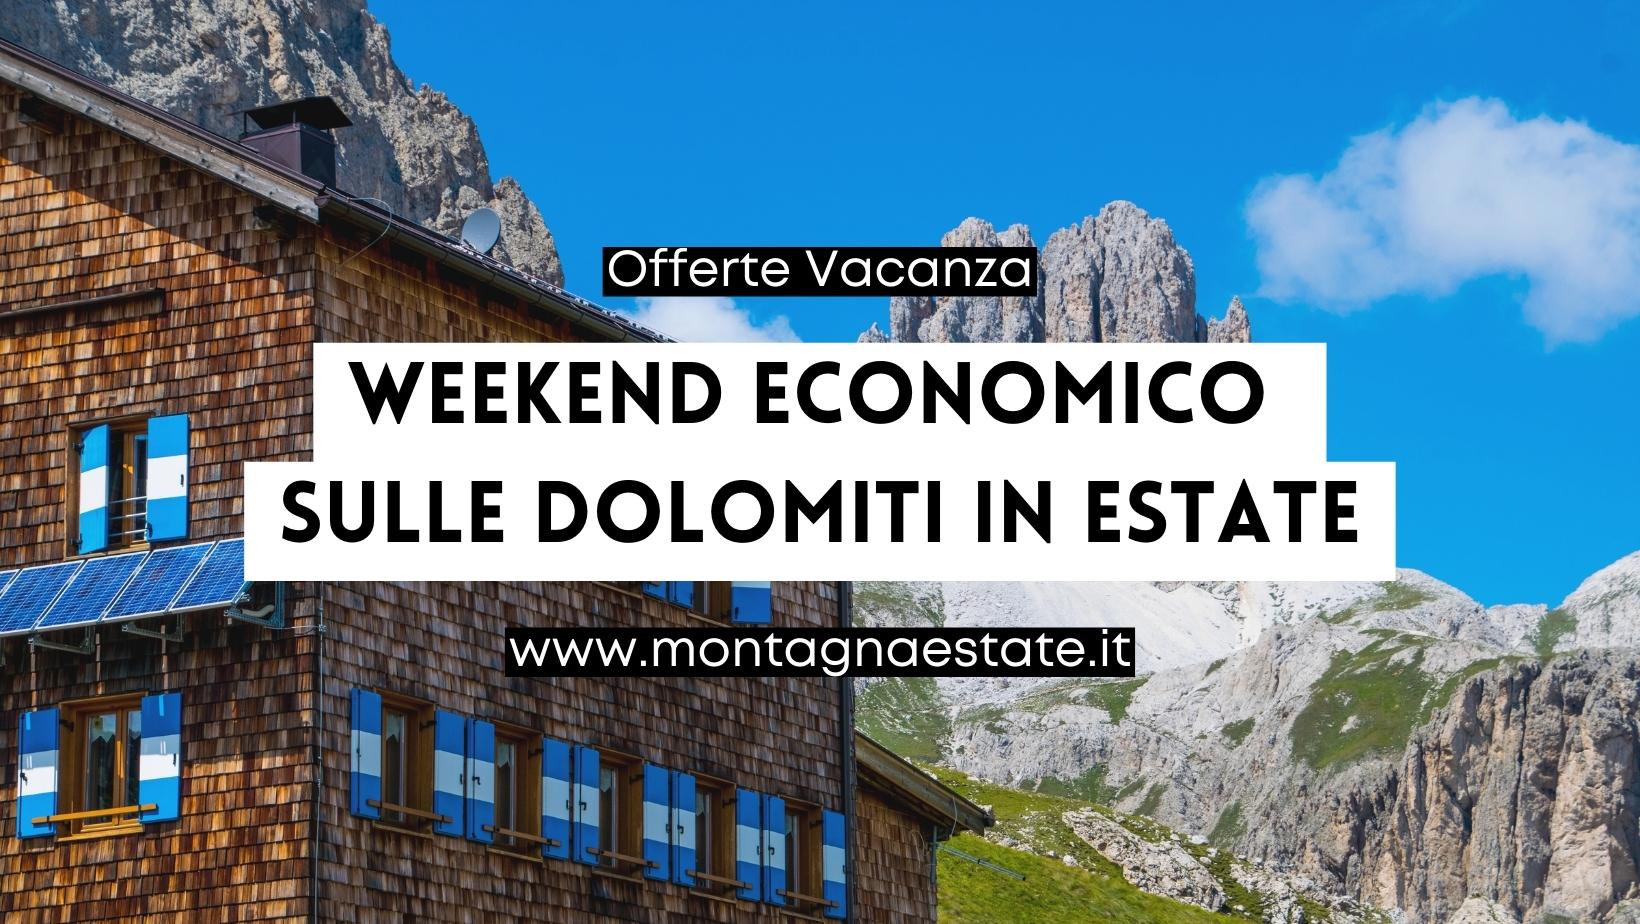 Aanbiedingen voor een goedkoop weekend in de Dolomieten in de zomer vanaf € 140 - Aanbiedingen - Bergzomer